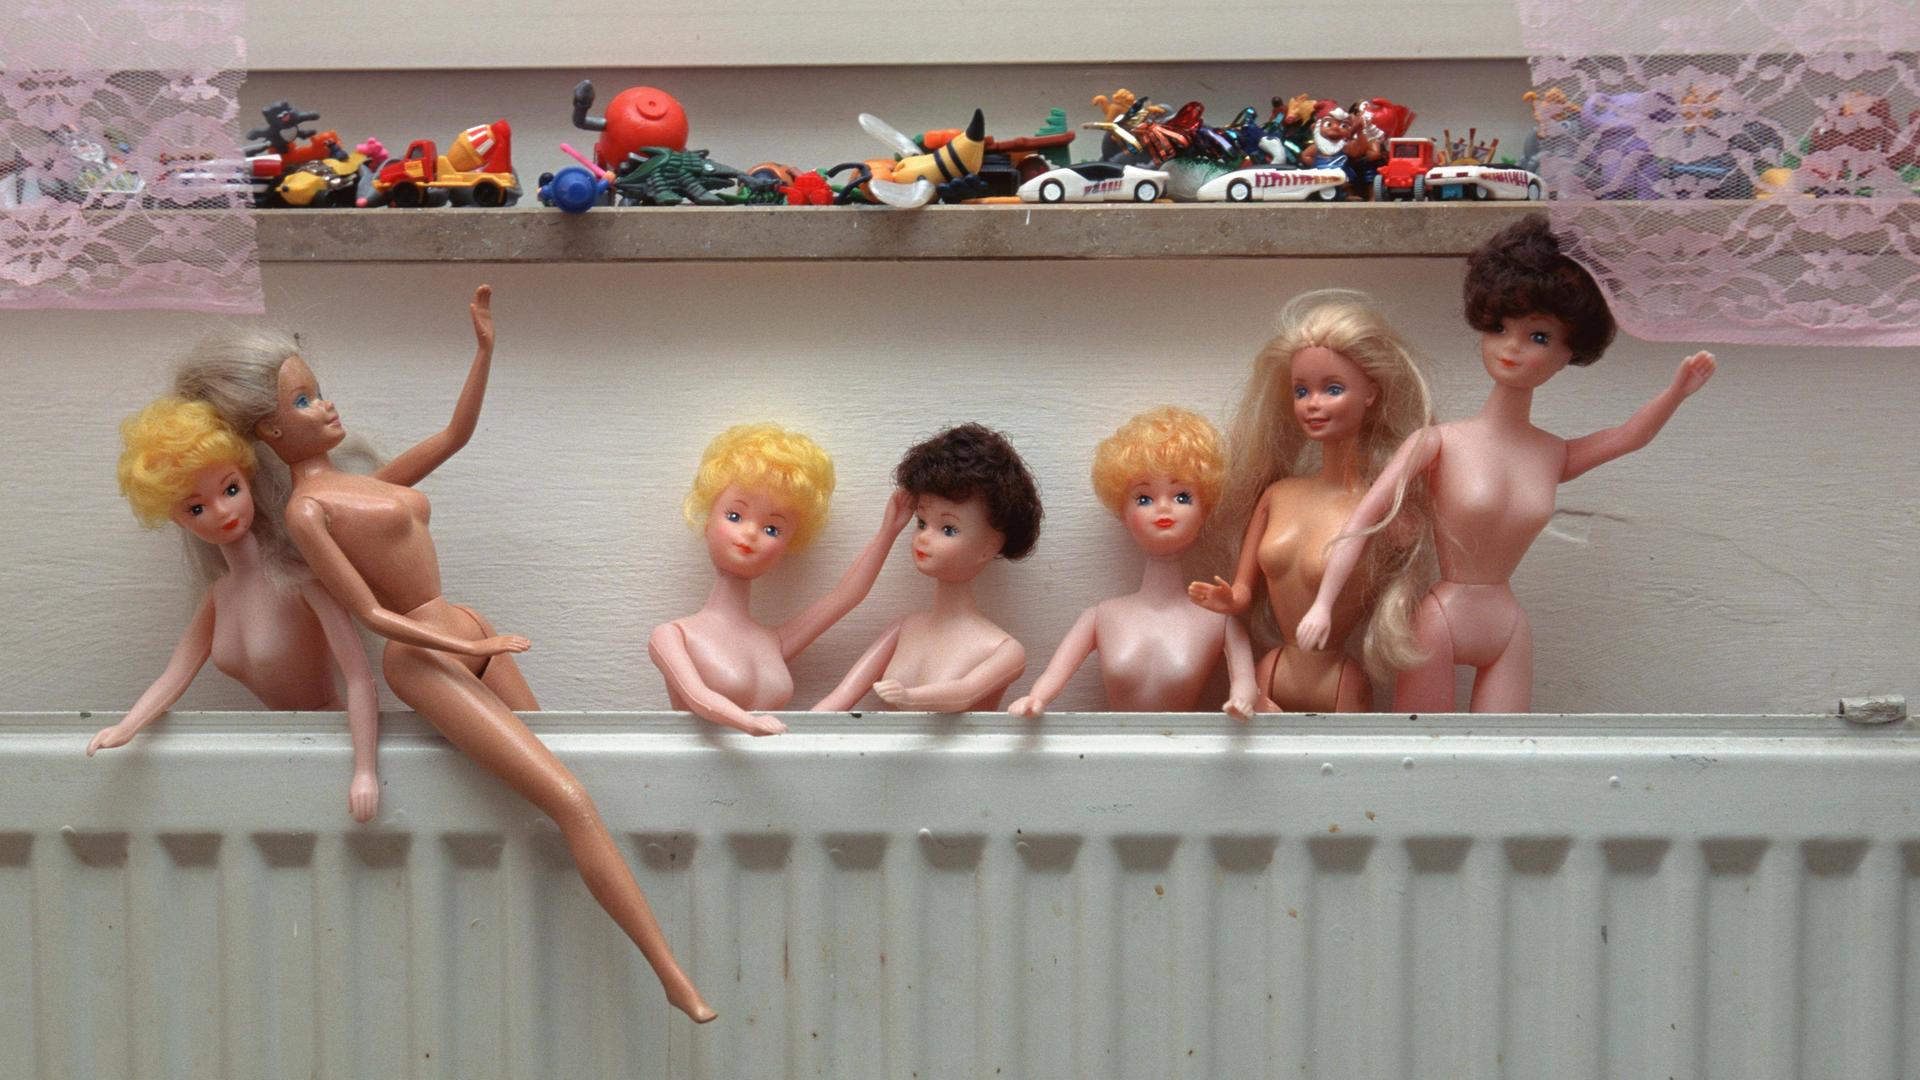 Nackte Barbiepuppen stecken hinter einer Heizung. Auf einer Fensterbank darüber ist weiteres Plastikspielzeug zu sehen. 